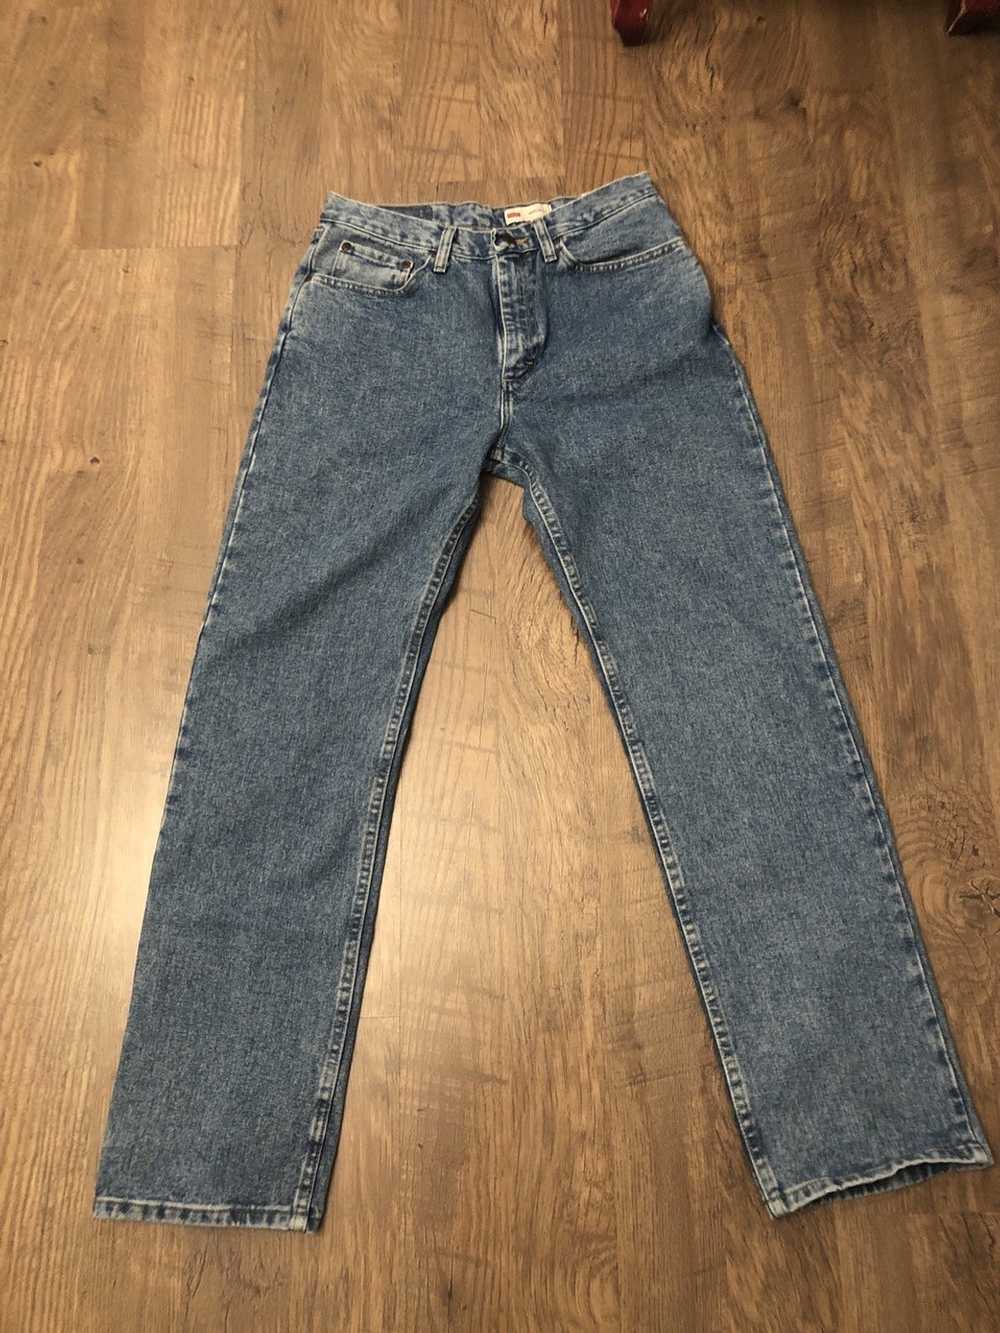 Vintage × Wrangler vintage wrangler jeans - image 1